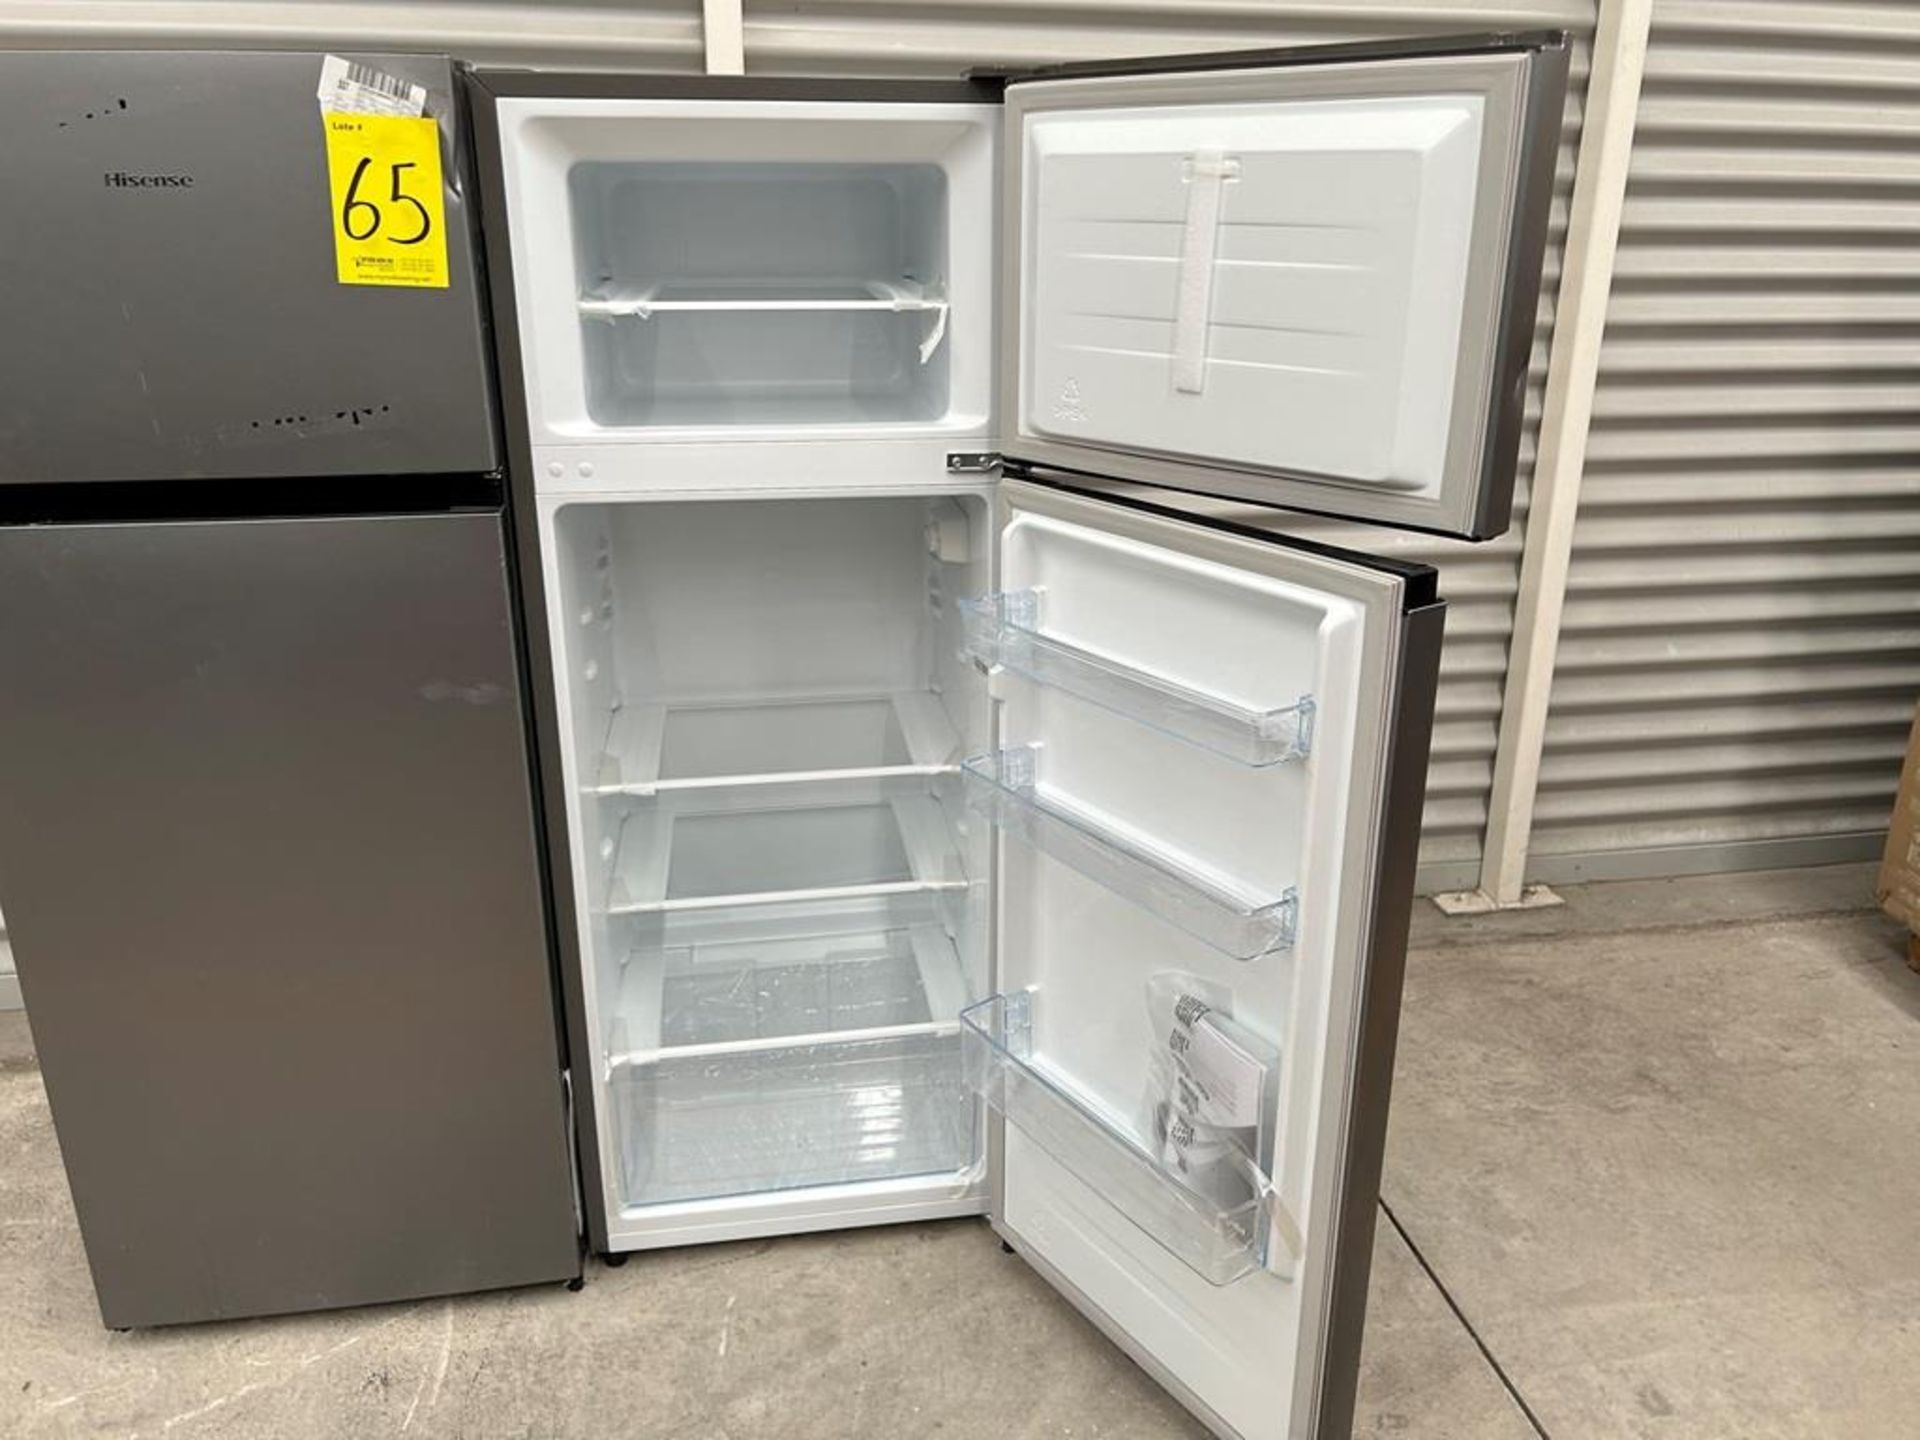 Lote de 2 refrigeradores contiene: 1 Refrigerador Marca HISENSE, Modelo RT80D6AGX, Color GRIS; 1 Re - Image 4 of 10